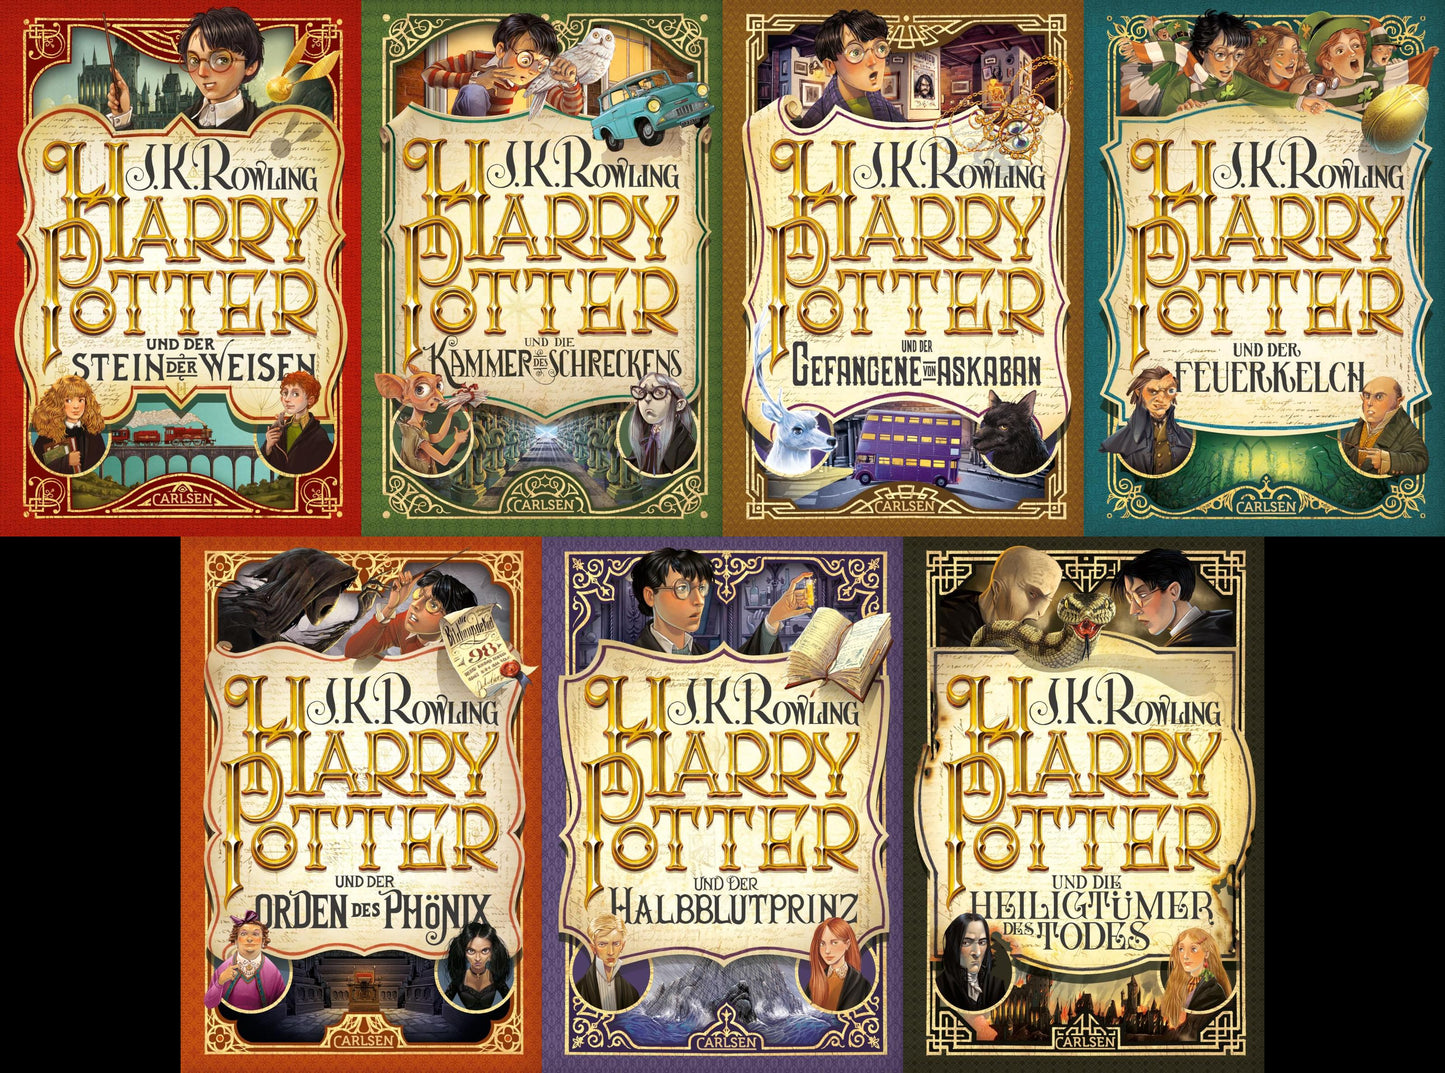 J.K. Rowling Harry Potter Jubiläumsausgabe(Hardcover)